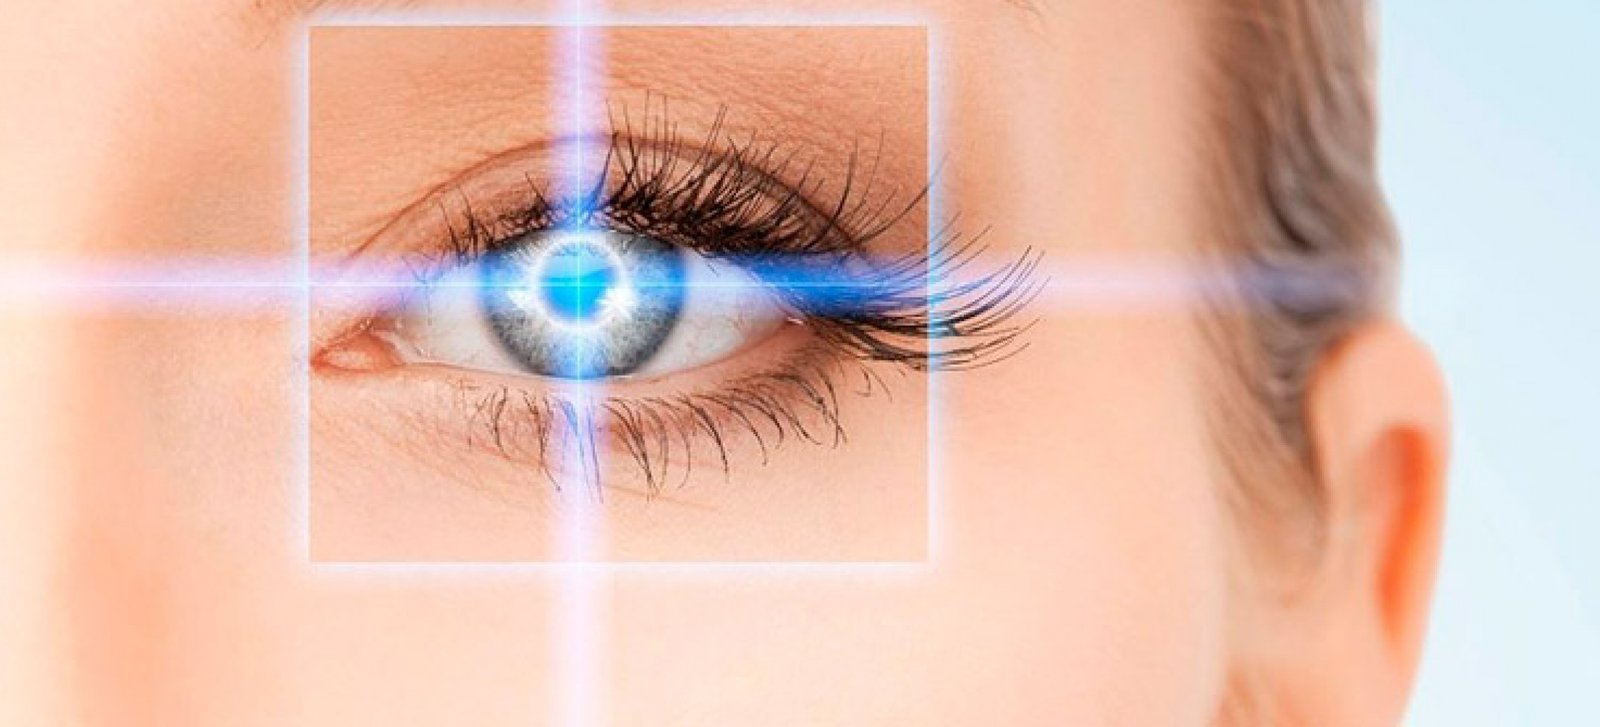 Cirurgia Refrativa a Laser : Miopia, Astigmatismo, Hipermetropia e